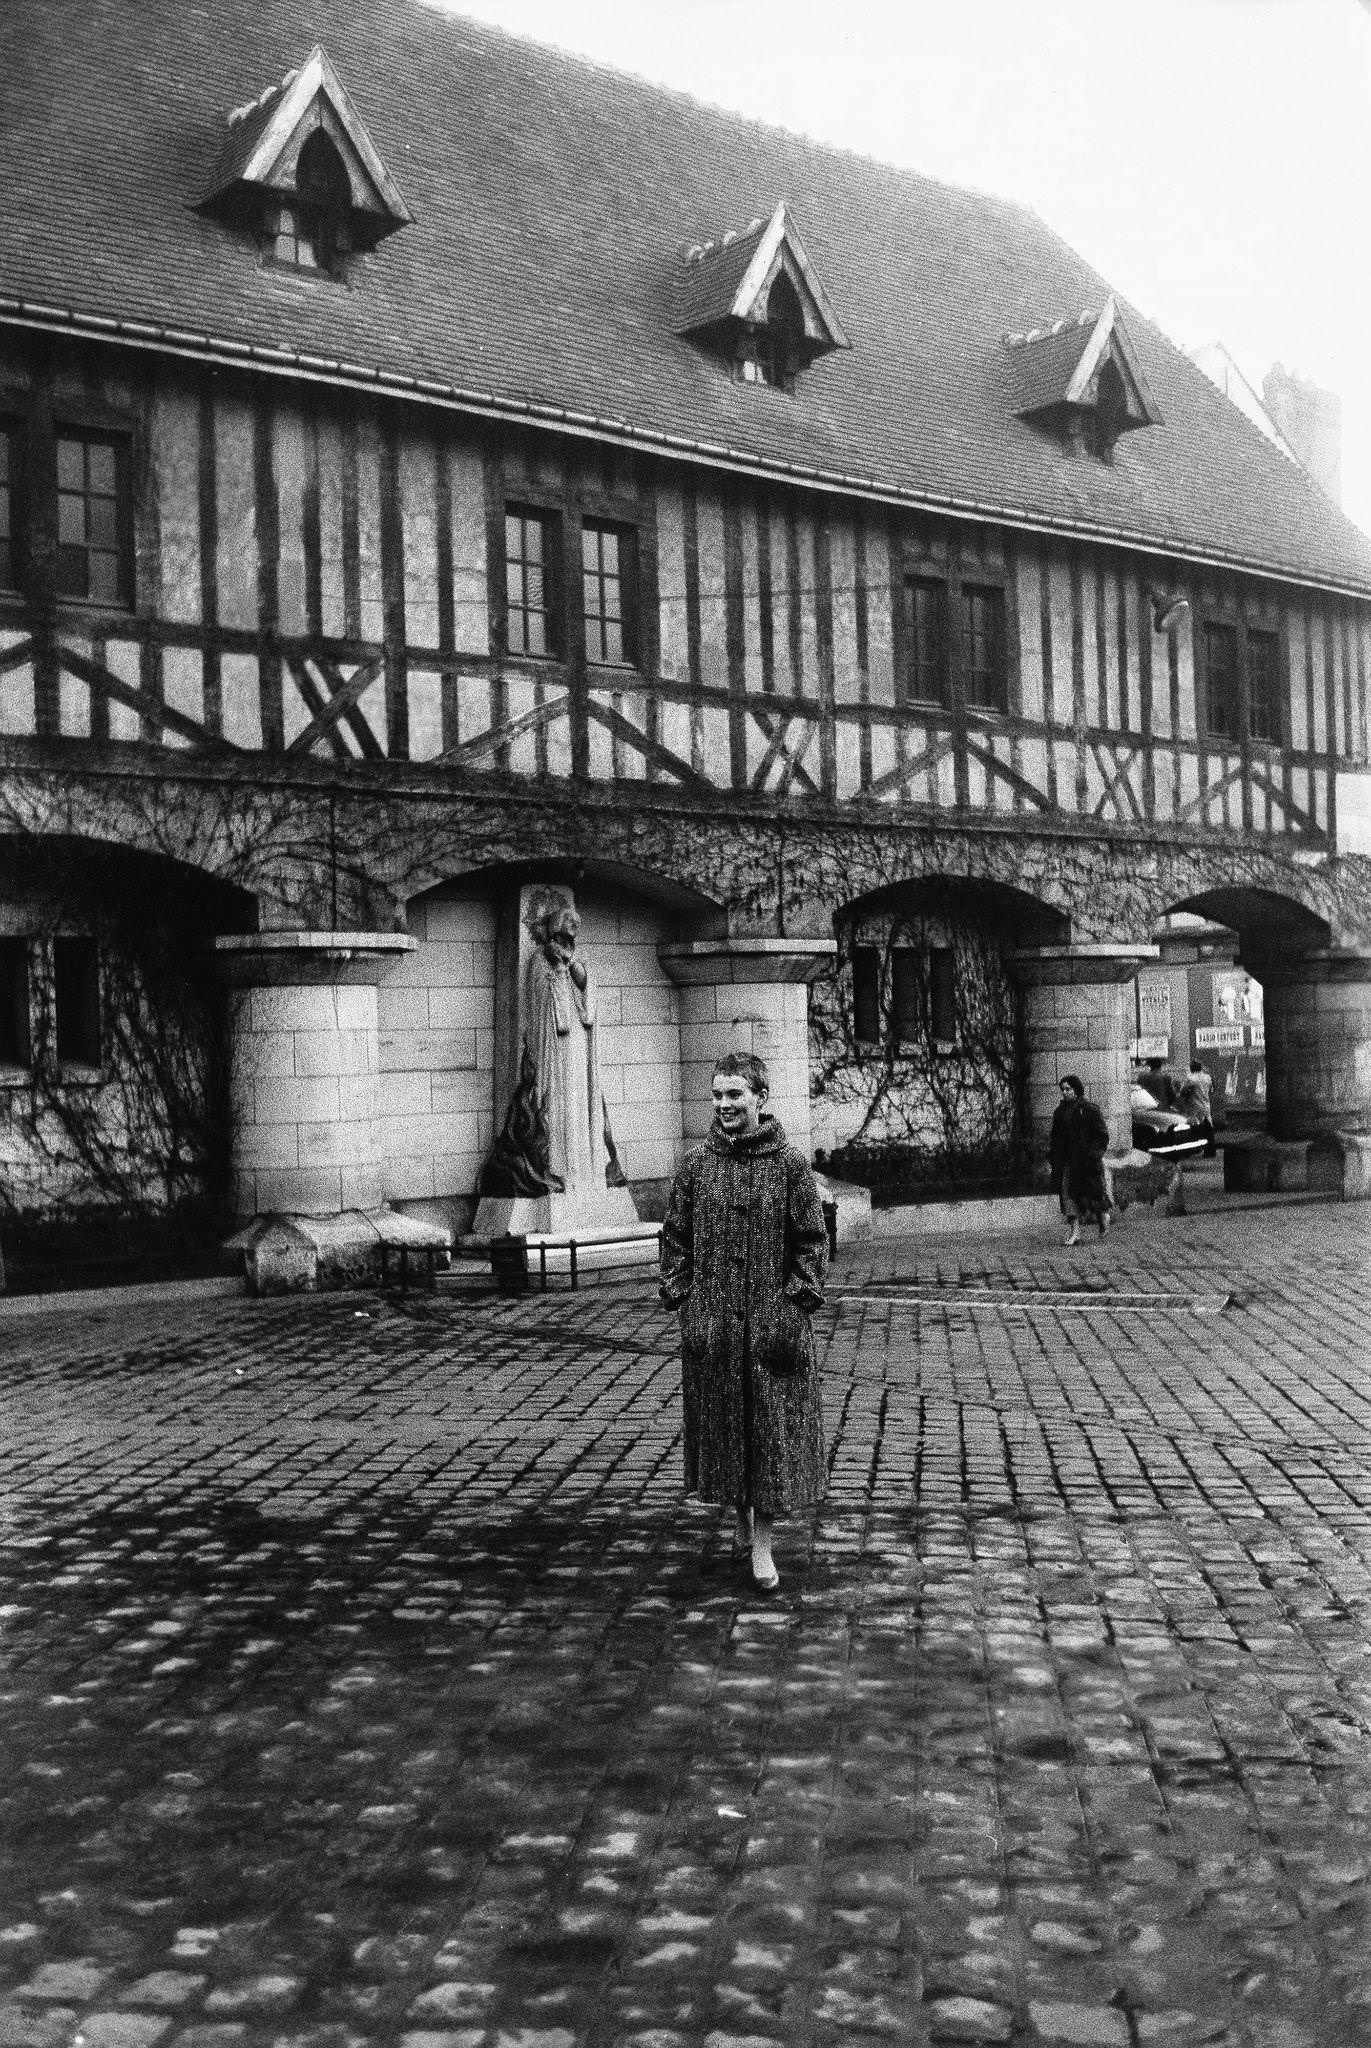 Jean Seberg in France, Following Joan of Arc's Footsteps, Rouen, 1955